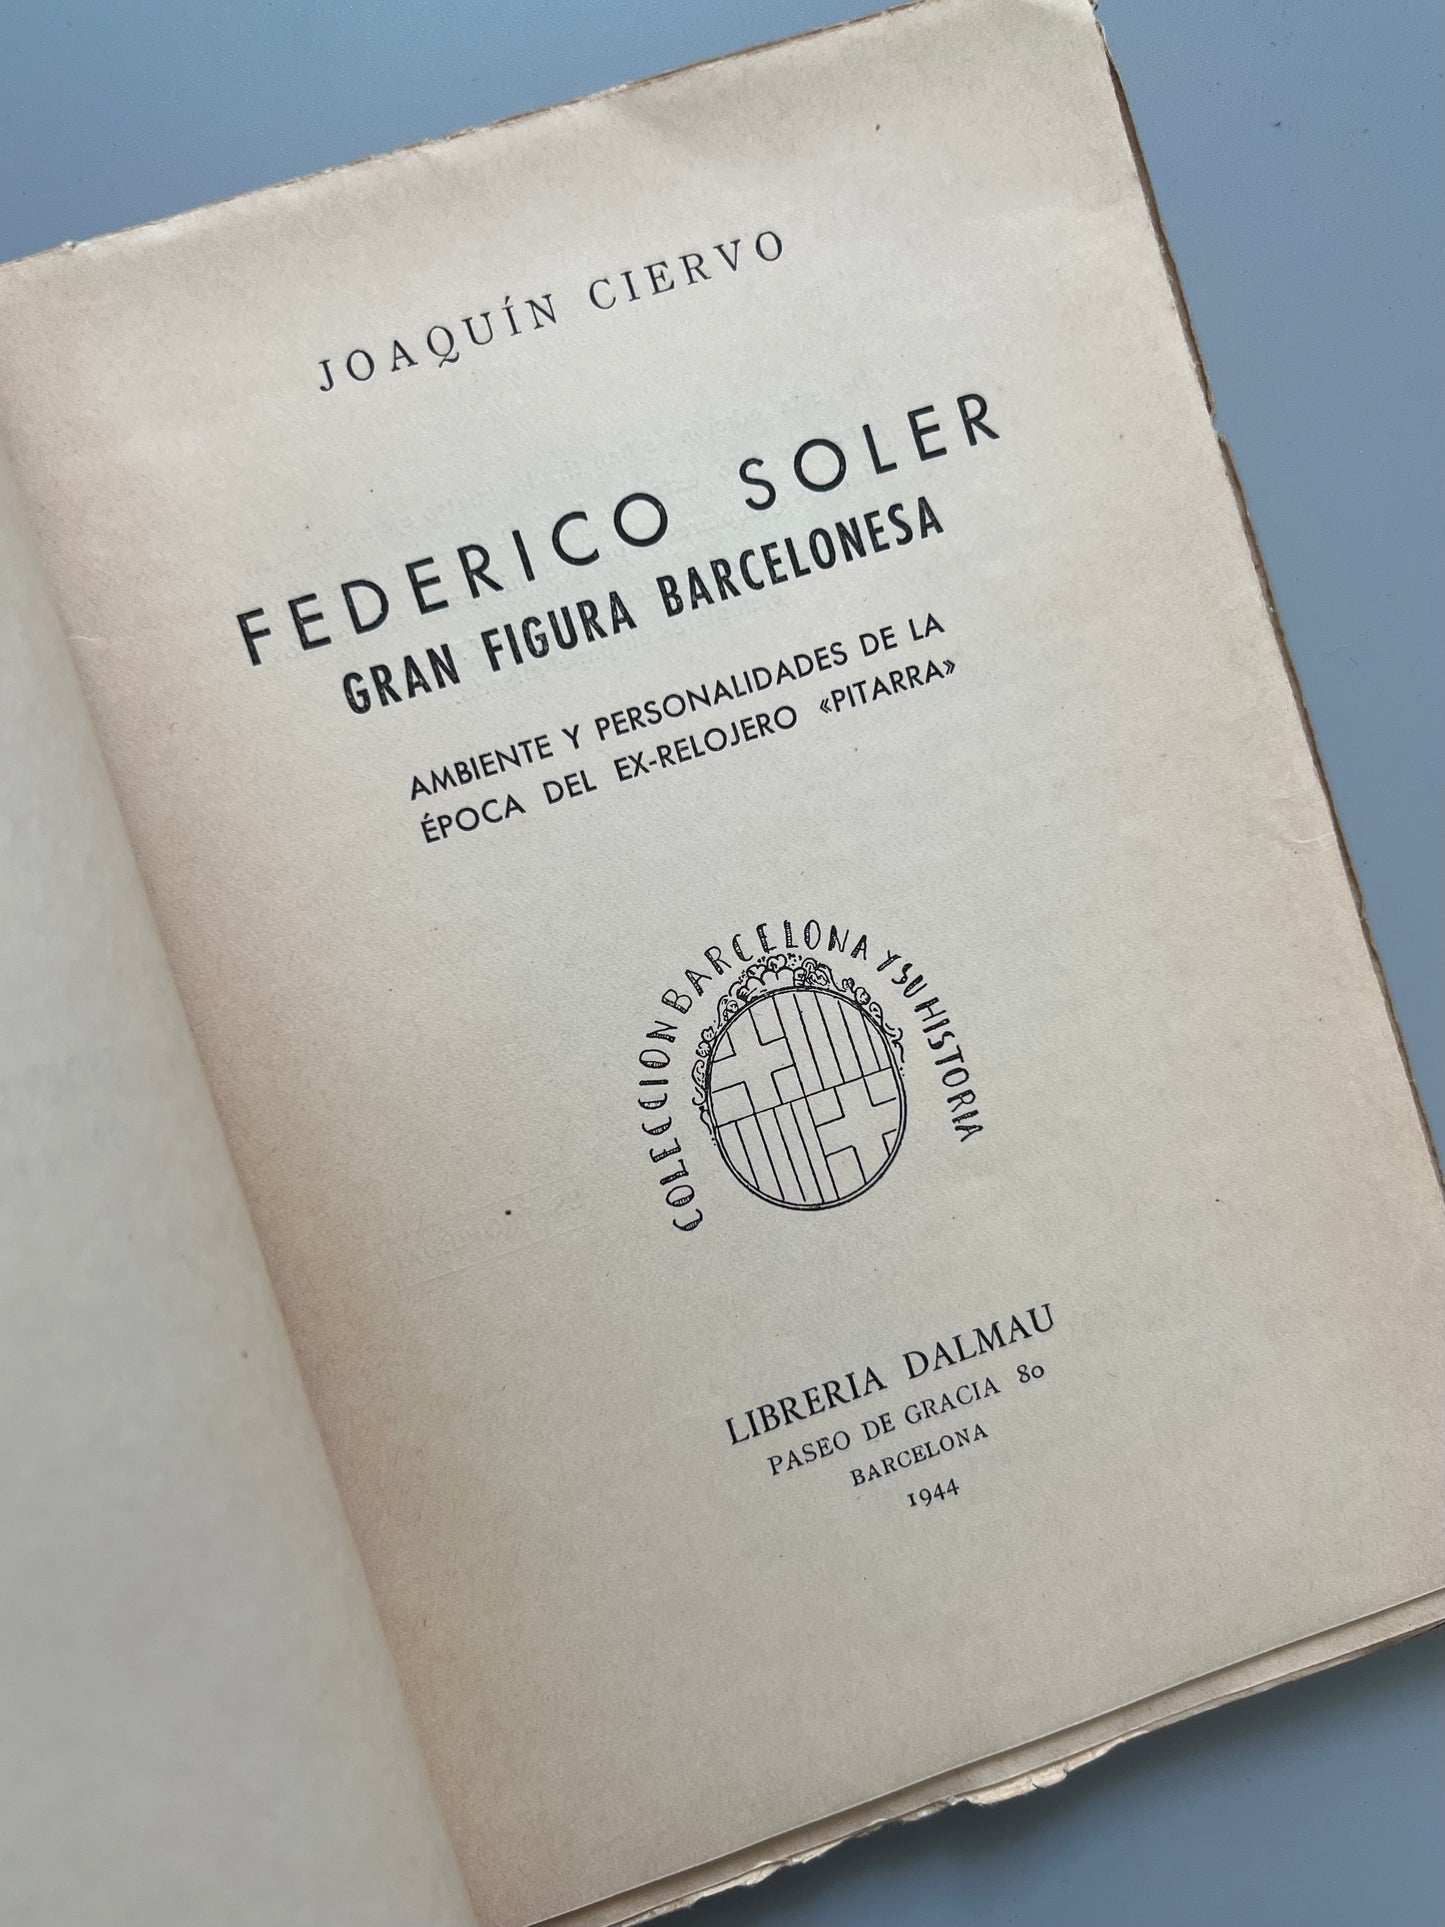 Federico Soler (Pitarra), Joaquin Ciervo - Librería Dalmau, 1944